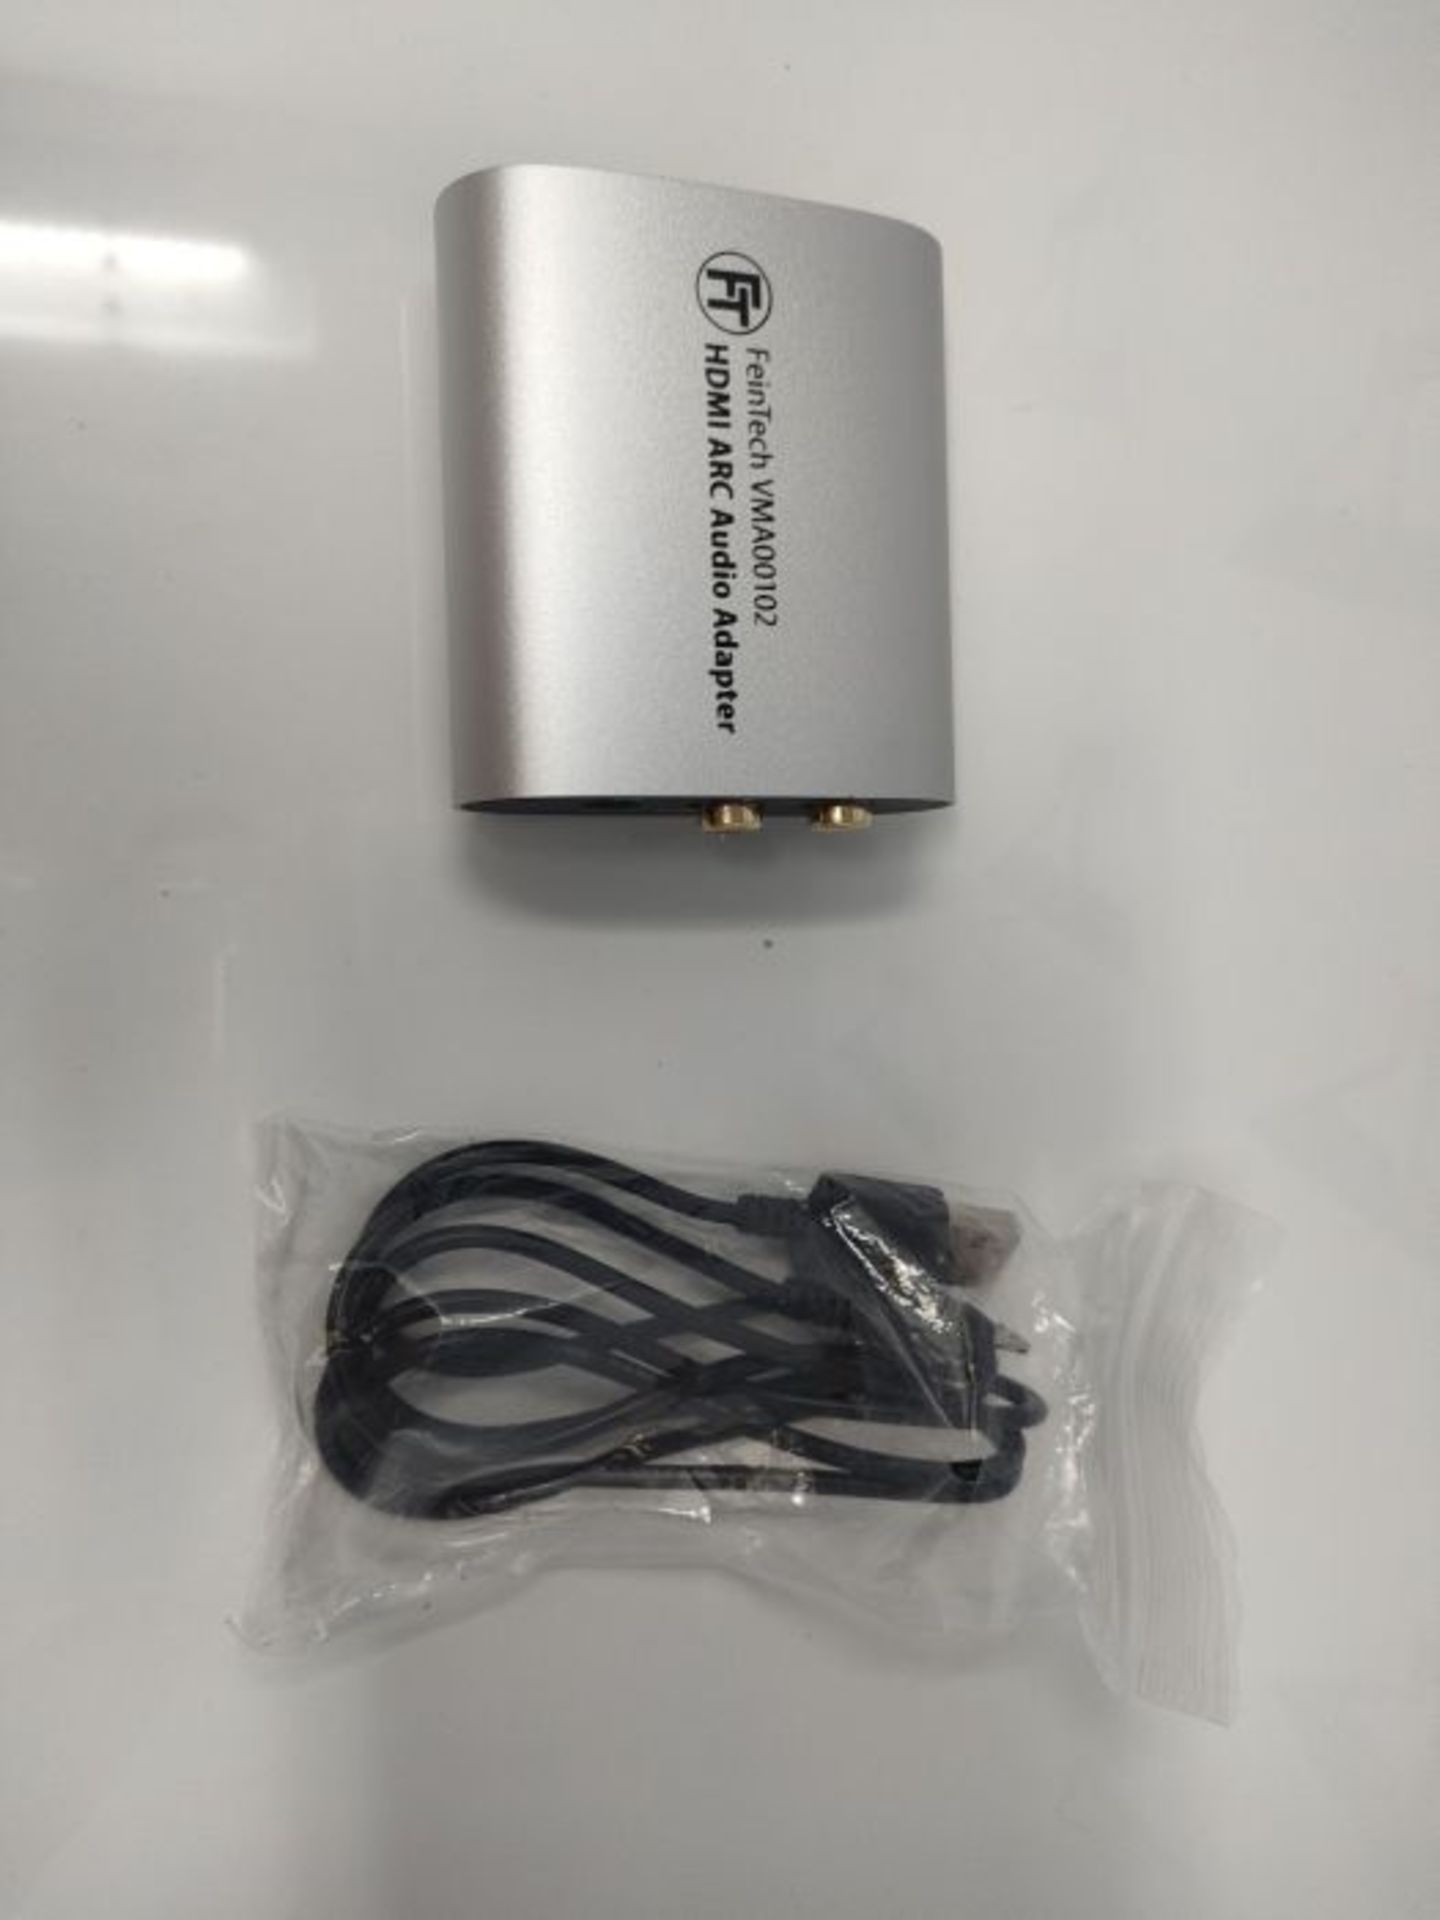 FeinTech VMA00102 HDMI-ARC Audio TV Adapter für Kopfhörer Stereo-Anlage mit Lautstä - Image 3 of 3